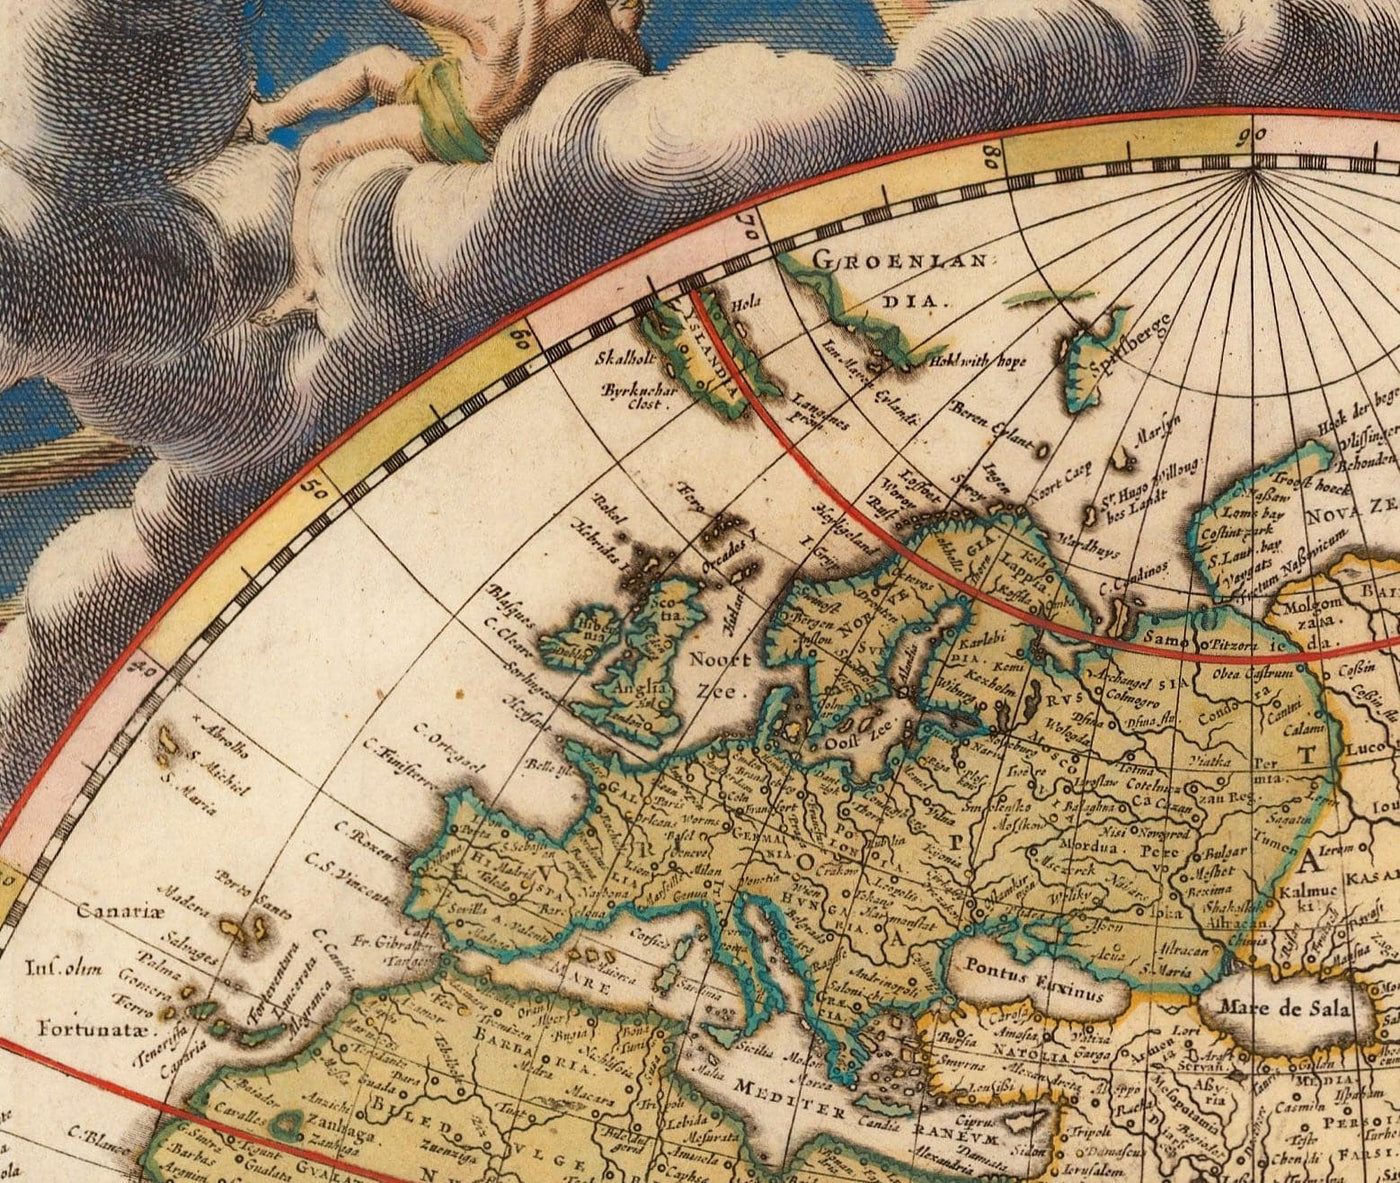 Mapa del Atlas del Viejo Mundo, 1662 de Joan Blaeu - Arte de la pared vintage a mano rara